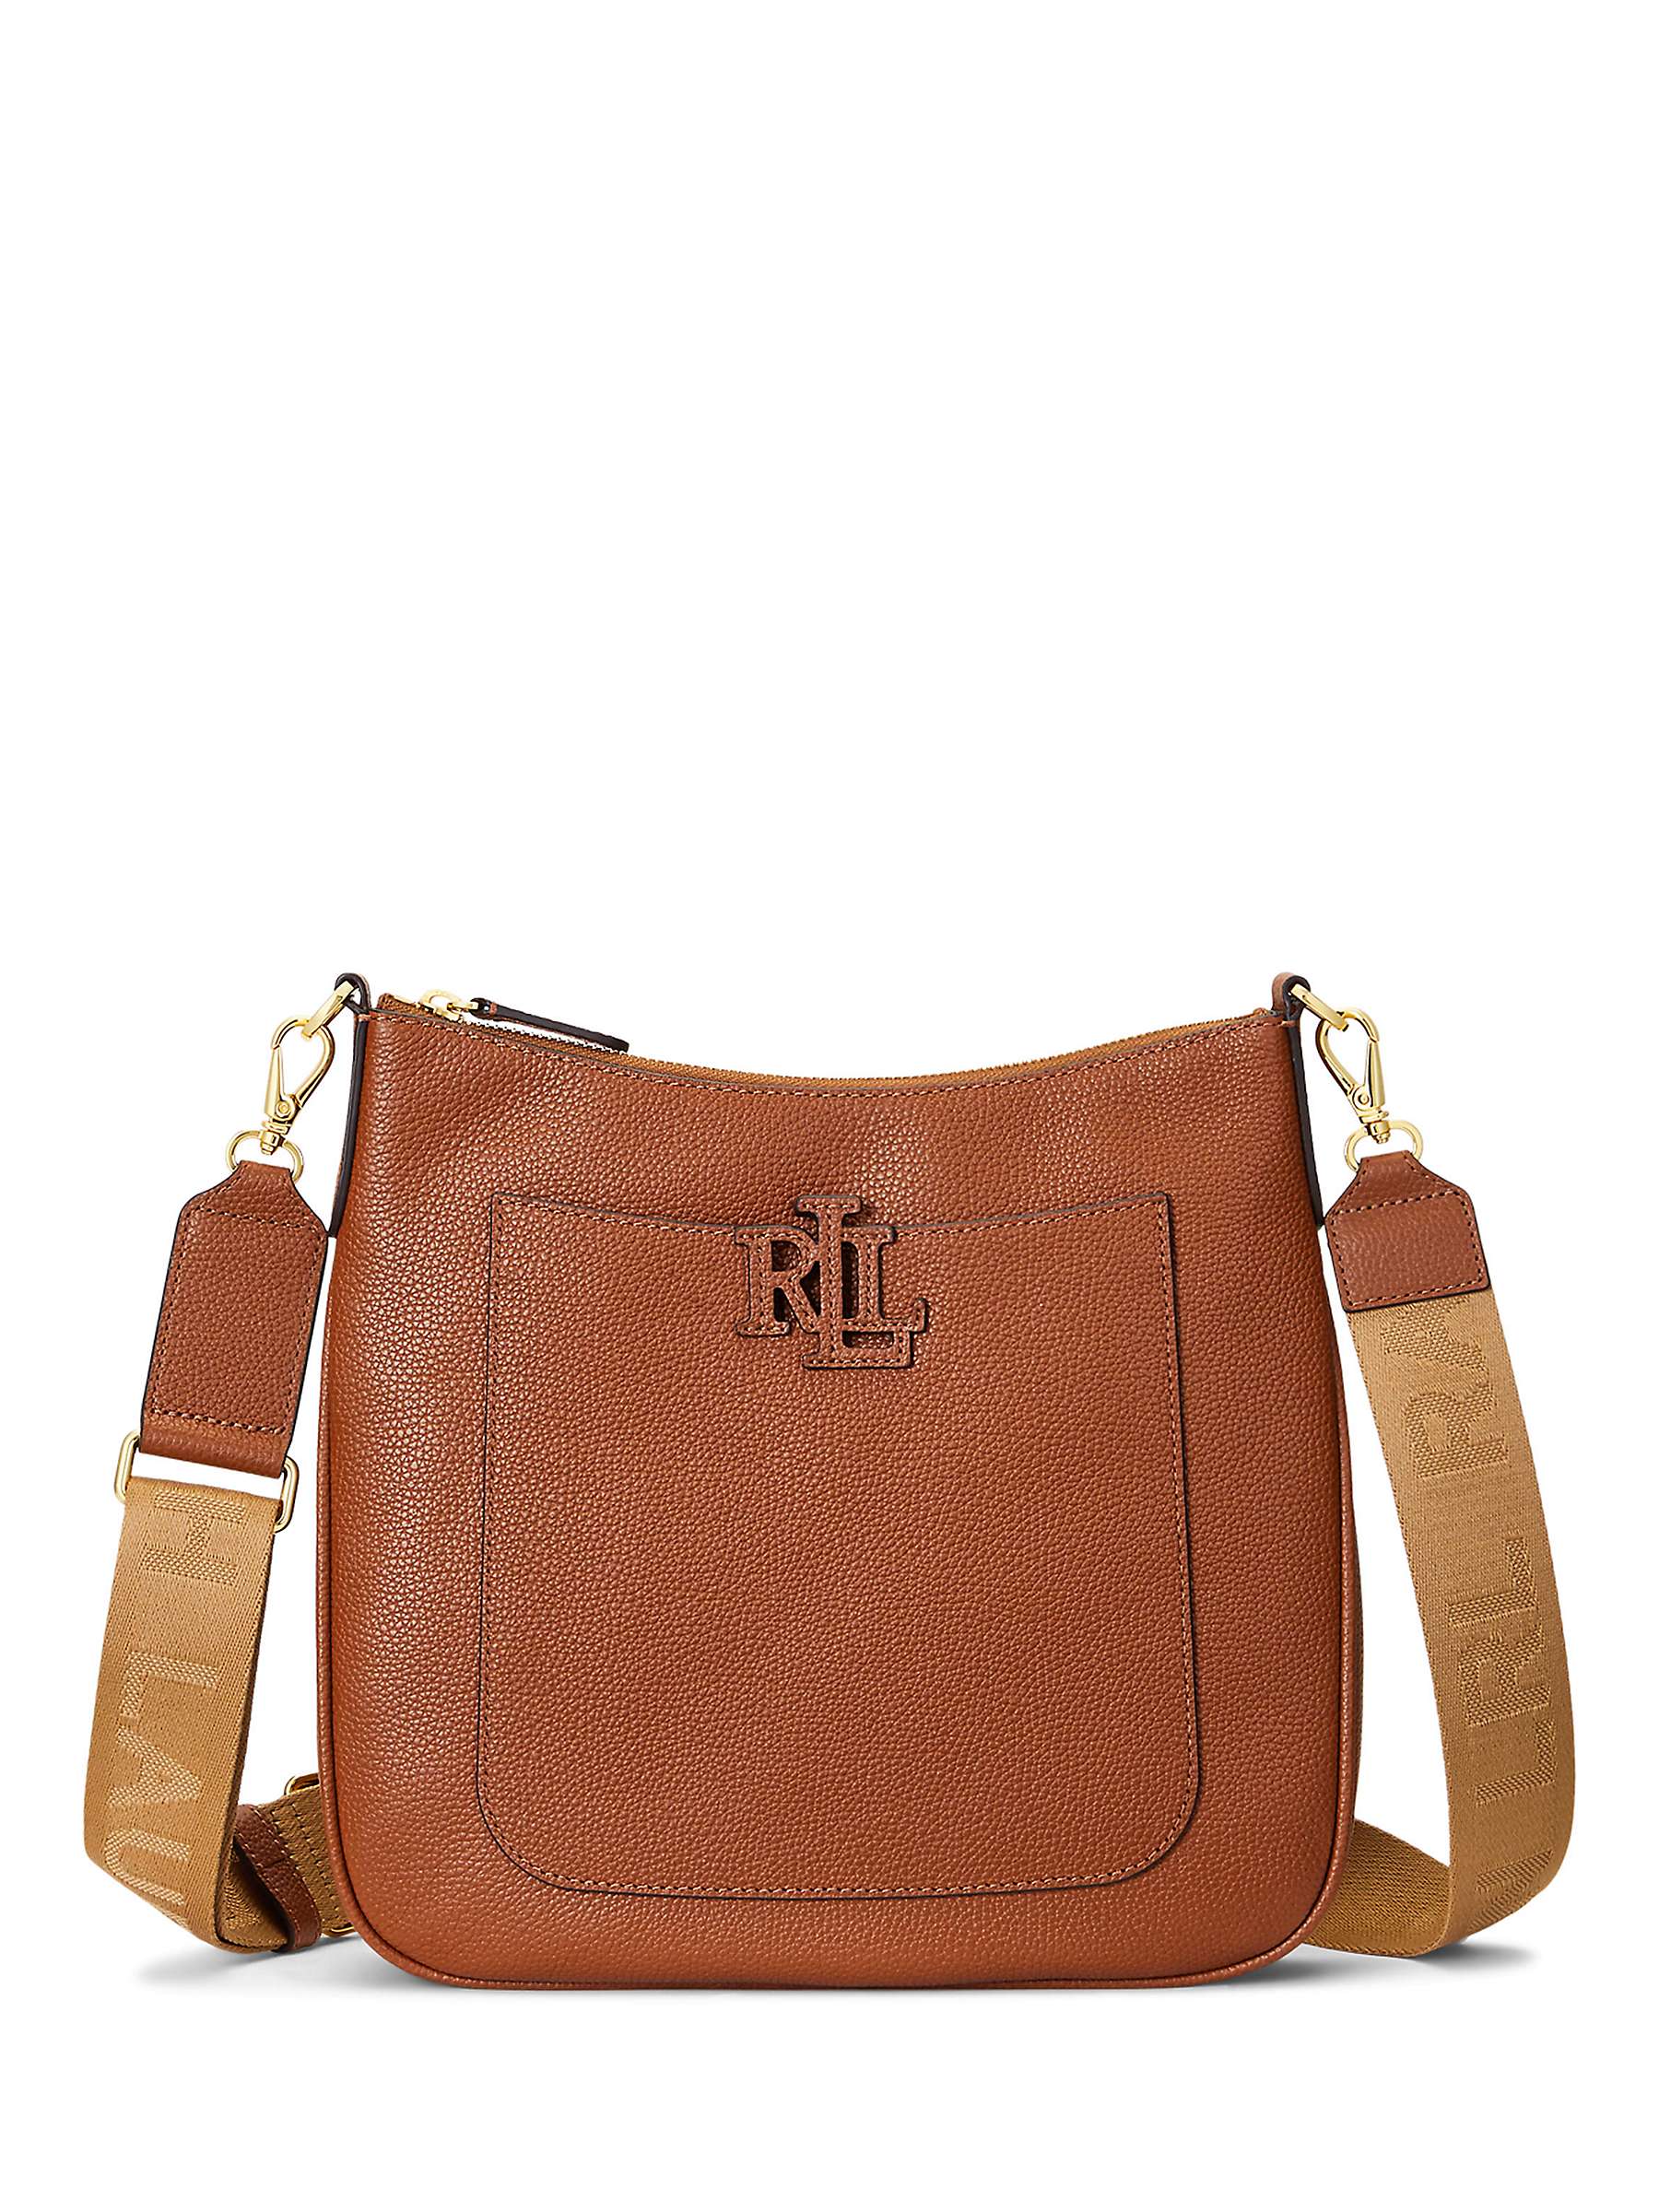 Buy Lauren Ralph Lauren Cameryn 27 Crossbody Bag Online at johnlewis.com